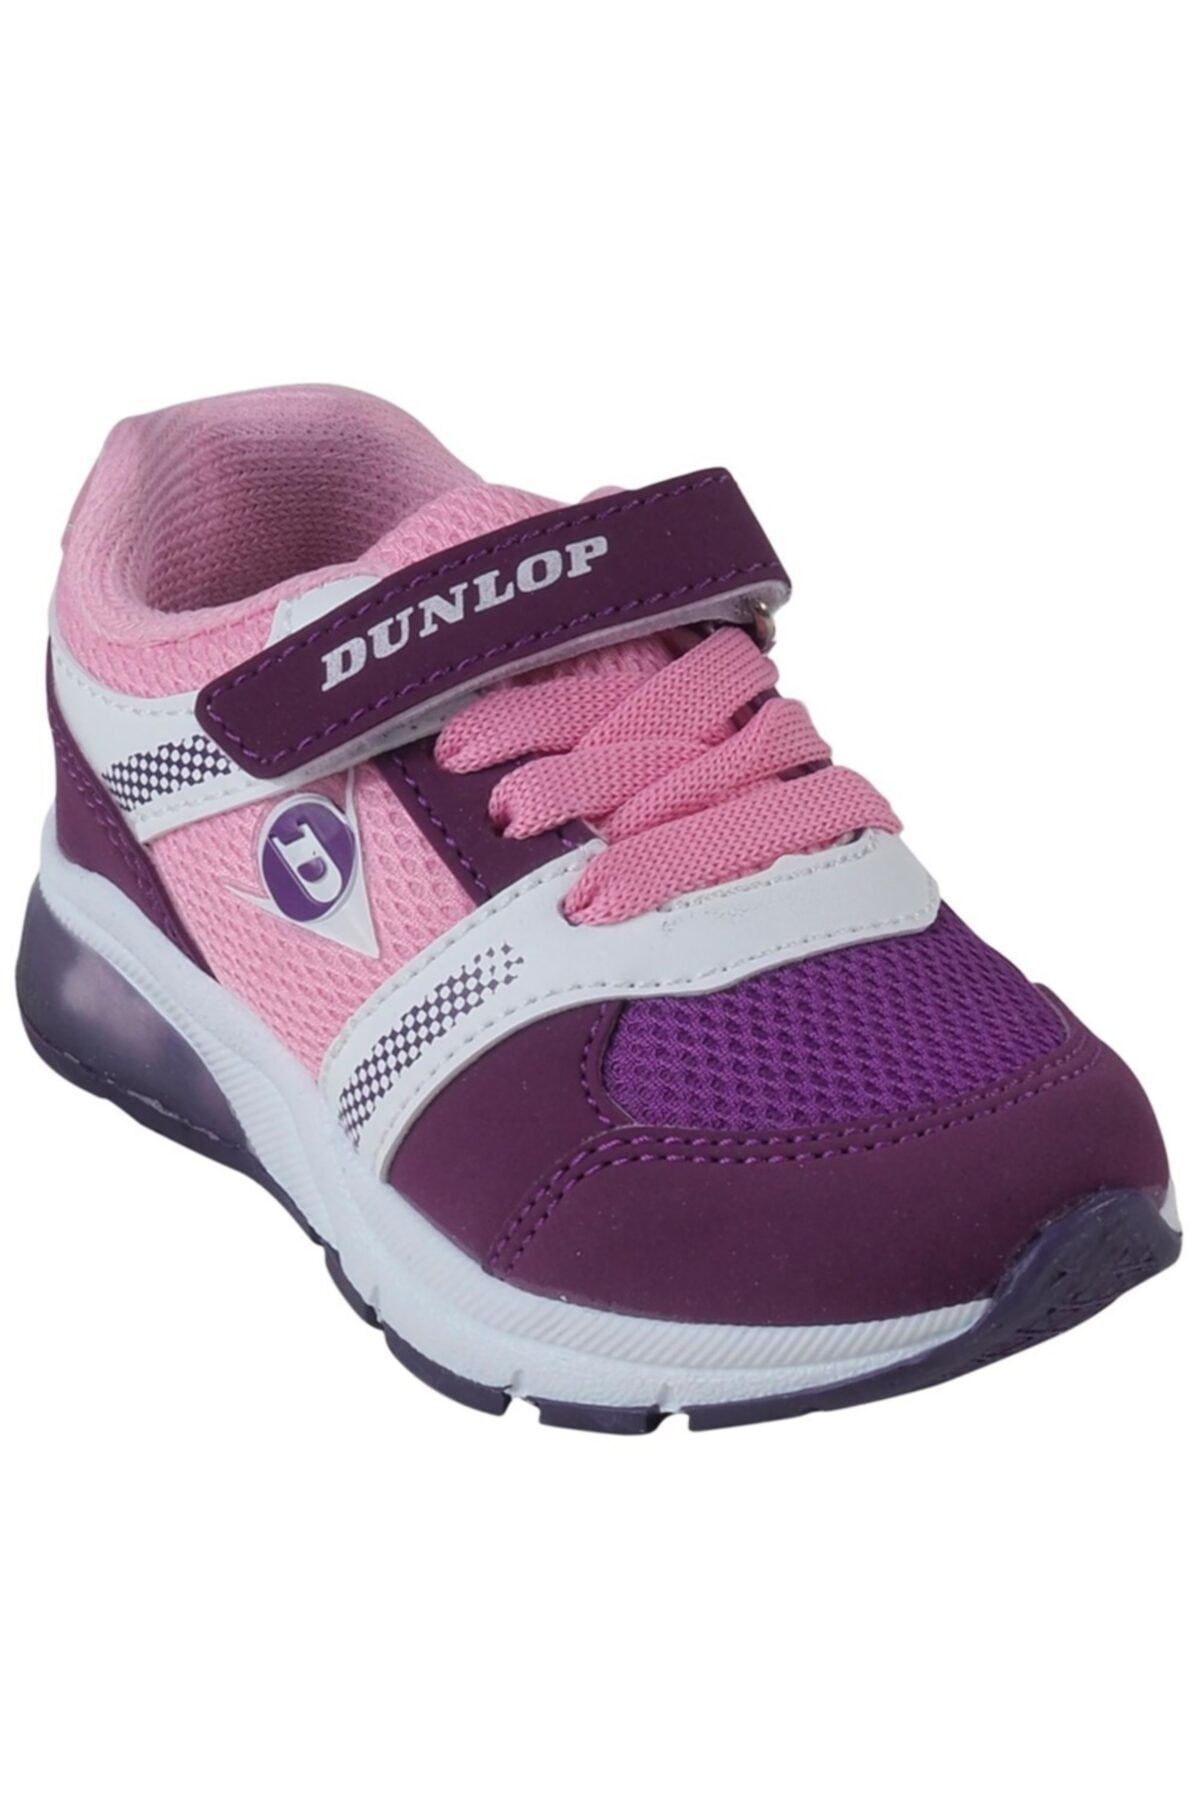 Dunlop Kız Çocuk Mor Spor Ayakkabı